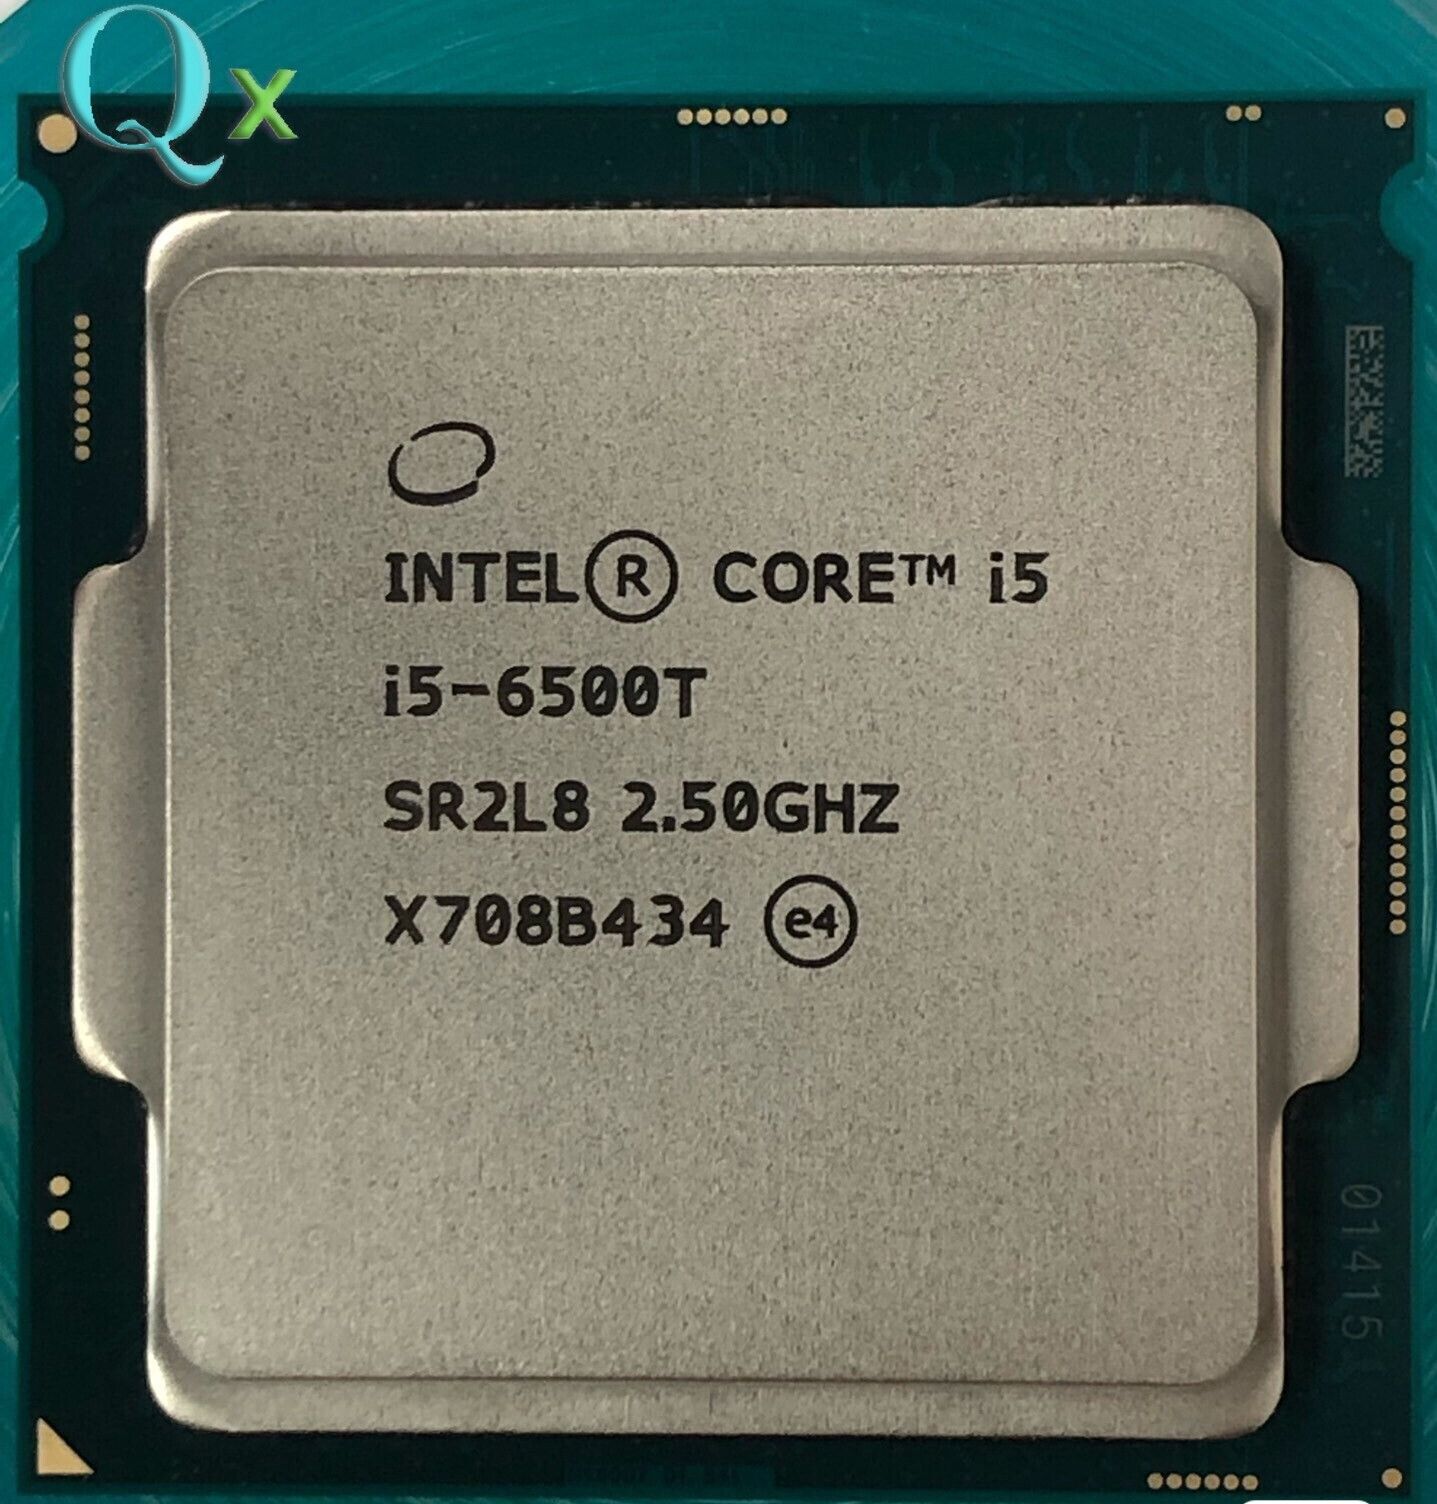 6Th Gen Intel Core i5-6500T LGA1151 CPU Processor 2.5GHZ Quad-Core Desktop